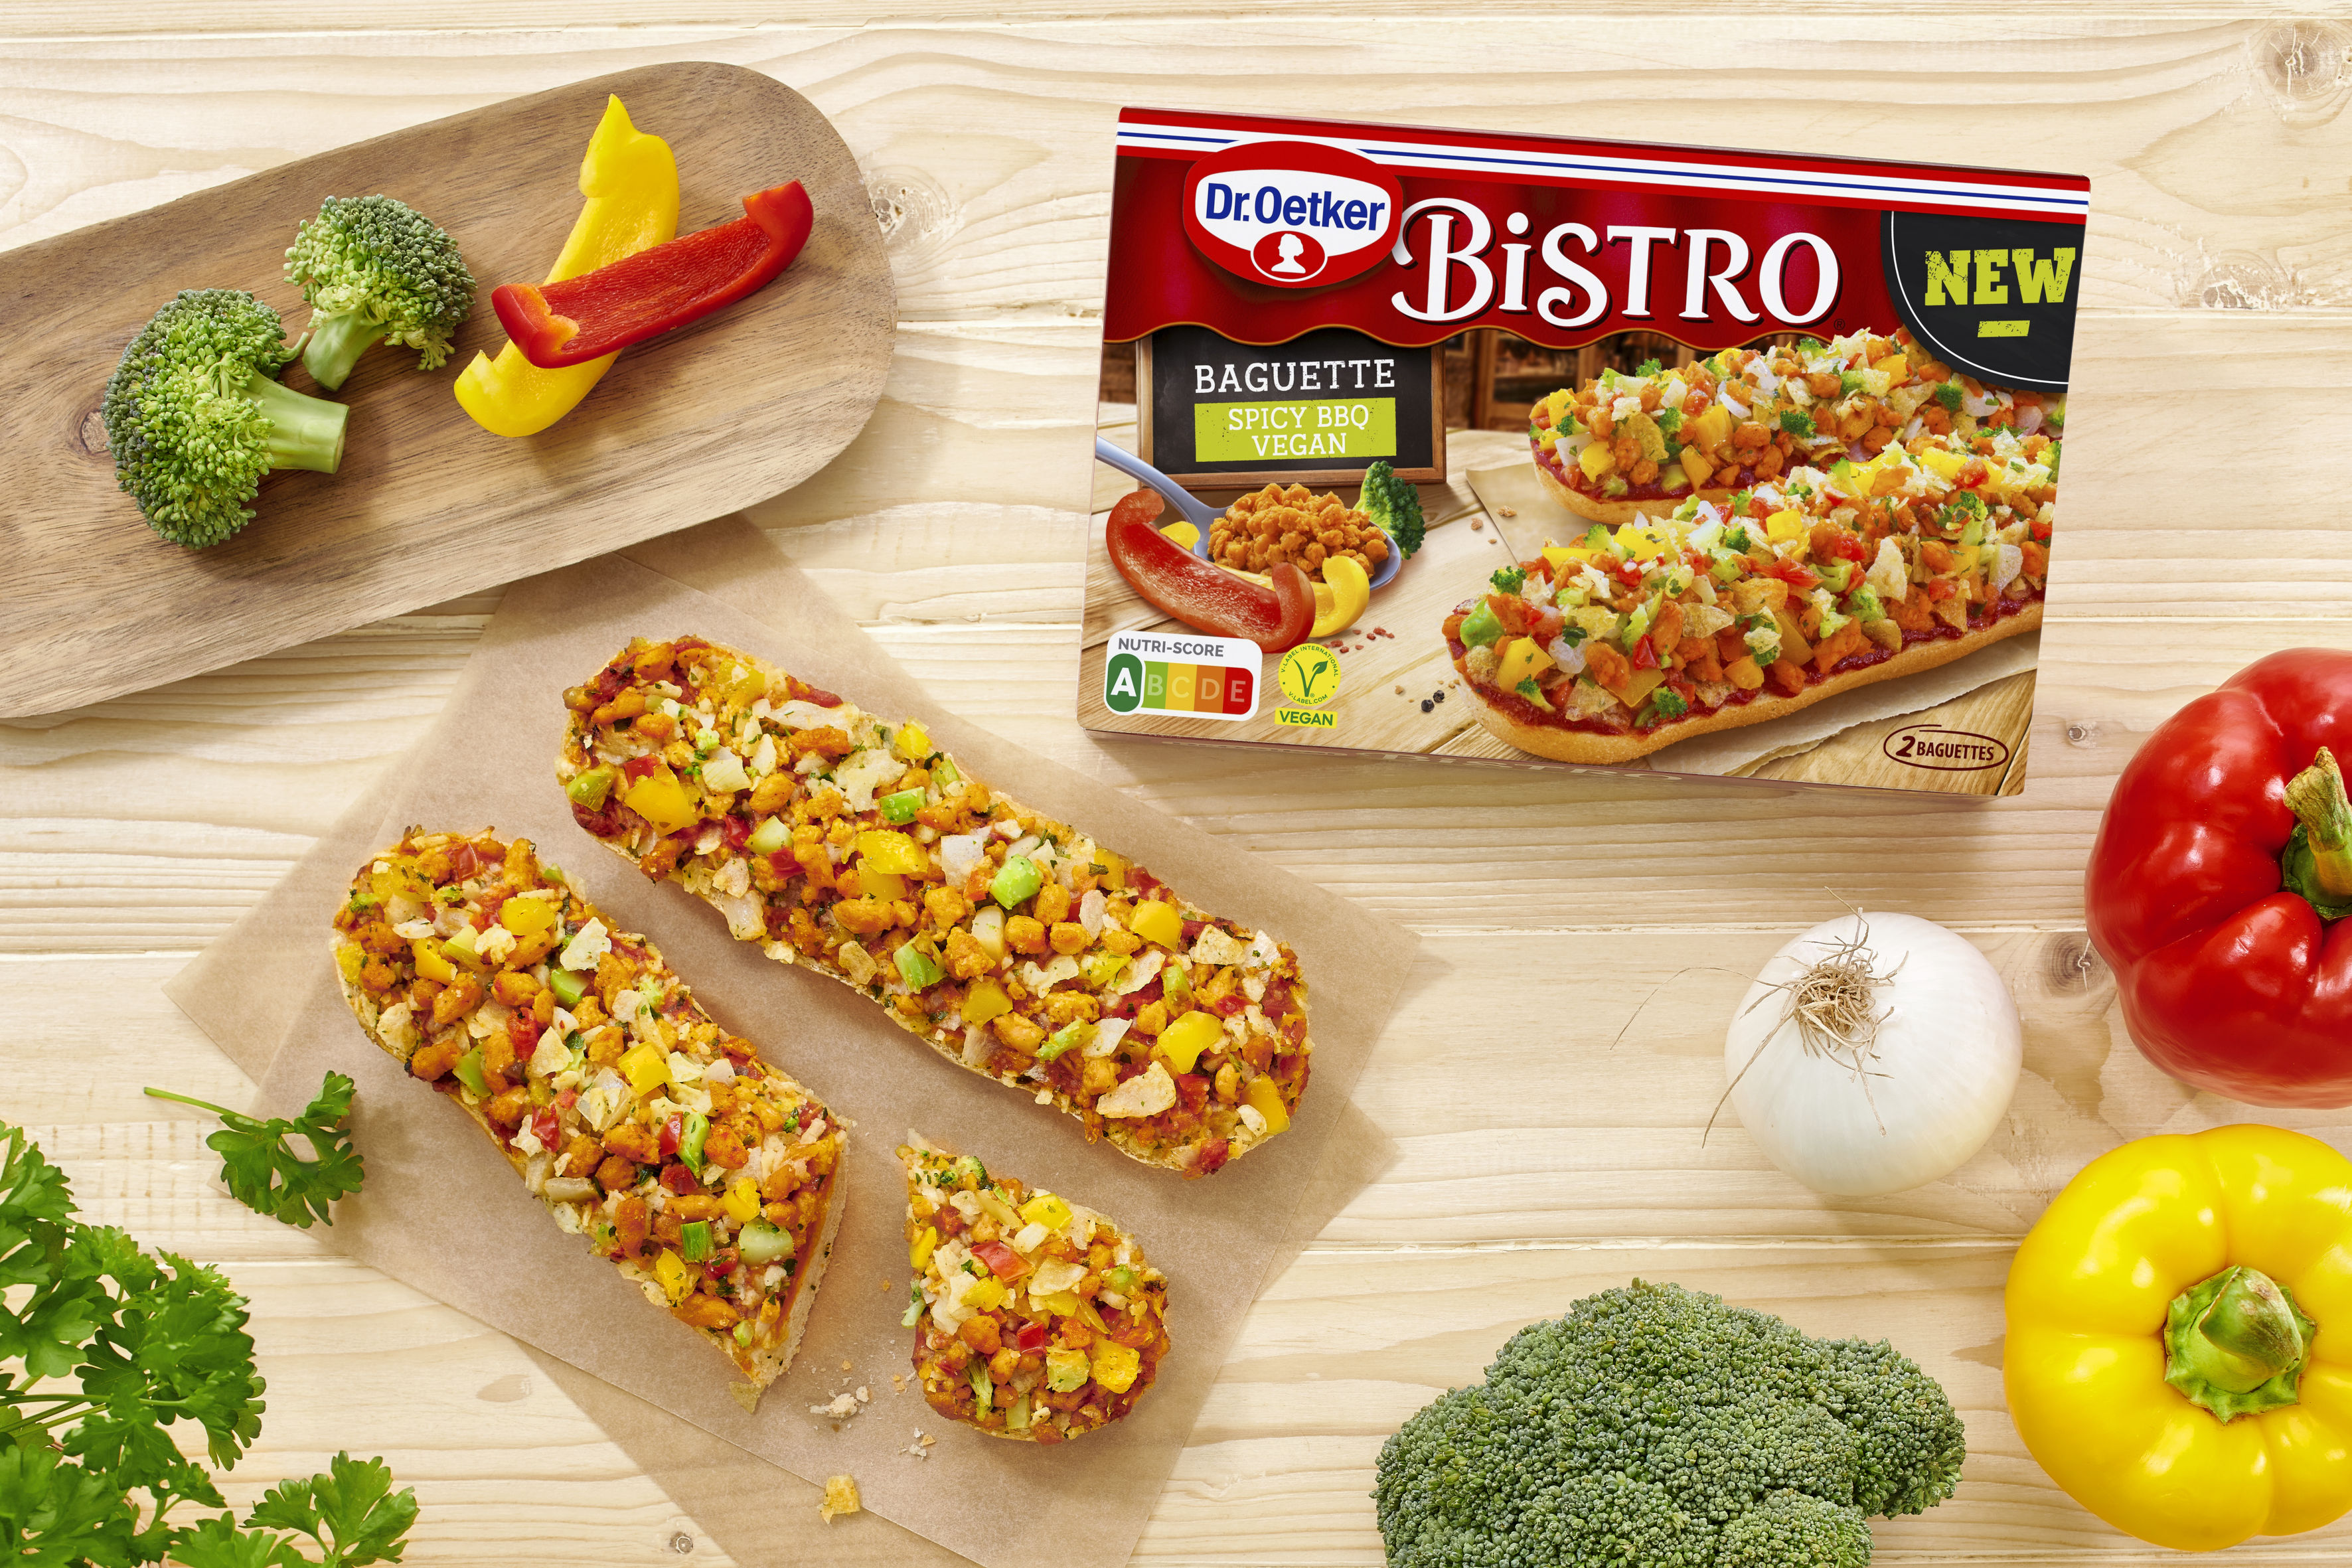 Bistro Baguette Spicy BBQ Vegan | Dr. Oetker Presse-Information